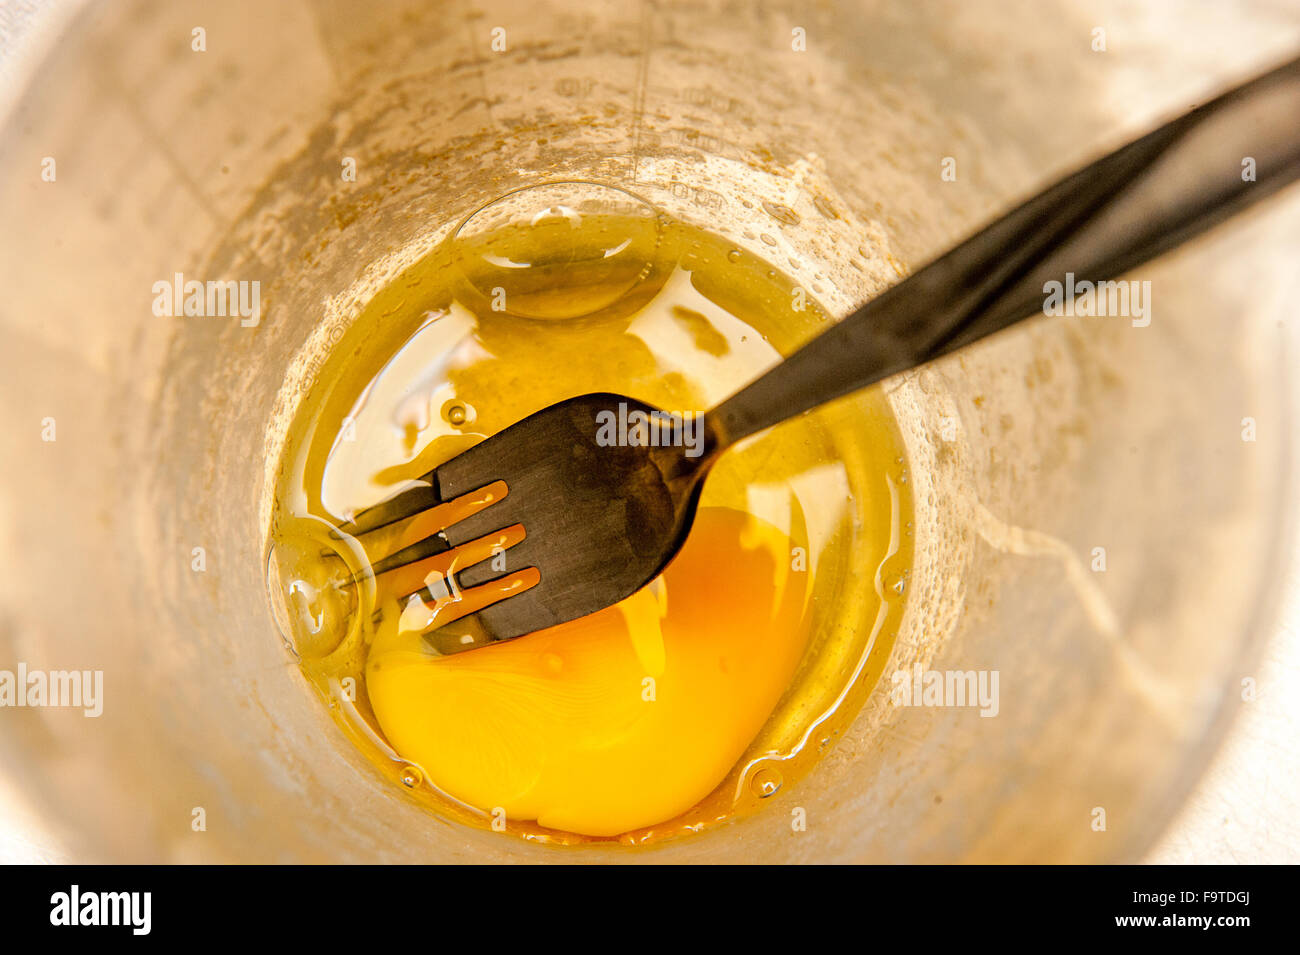 https://c8.alamy.com/comp/F9TDGJ/close-up-of-egg-in-a-jug-with-a-fork-F9TDGJ.jpg